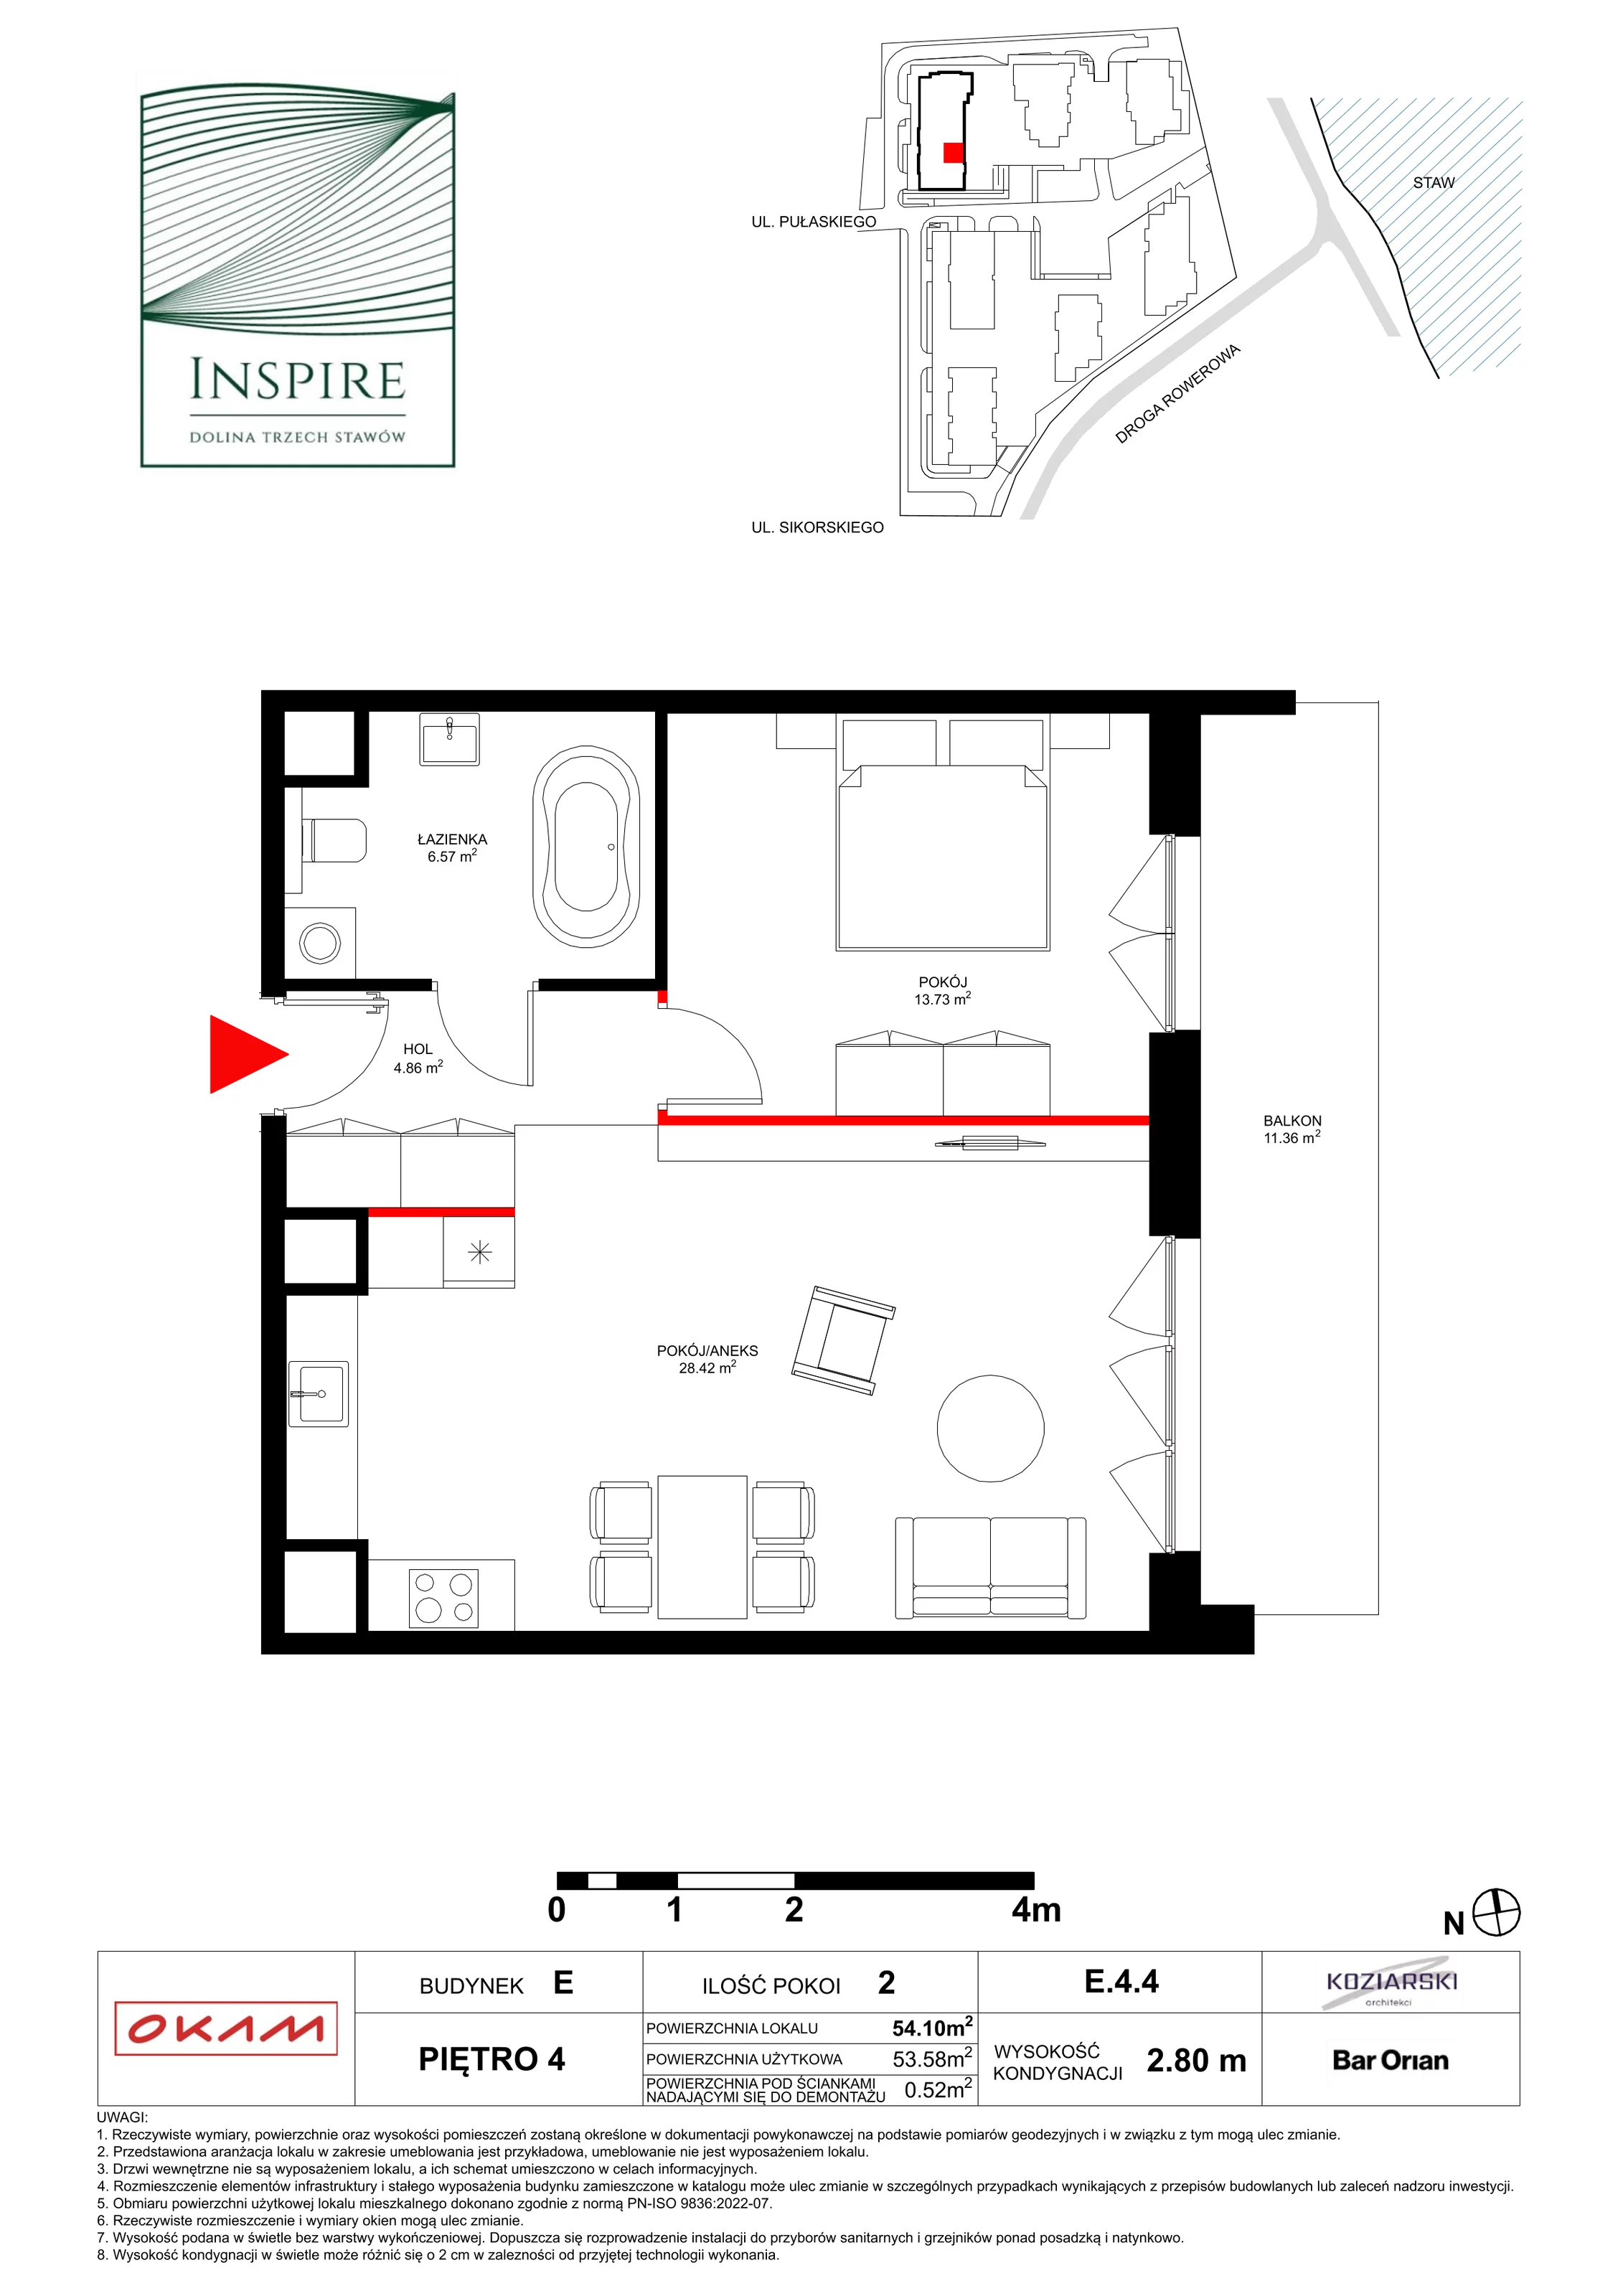 Apartament 53,58 m², piętro 4, oferta nr E.4.4, Inspire, Katowice, Osiedle Paderewskiego-Muchowiec, Dolina Trzech Stawów, ul. gen. Sikorskiego 41